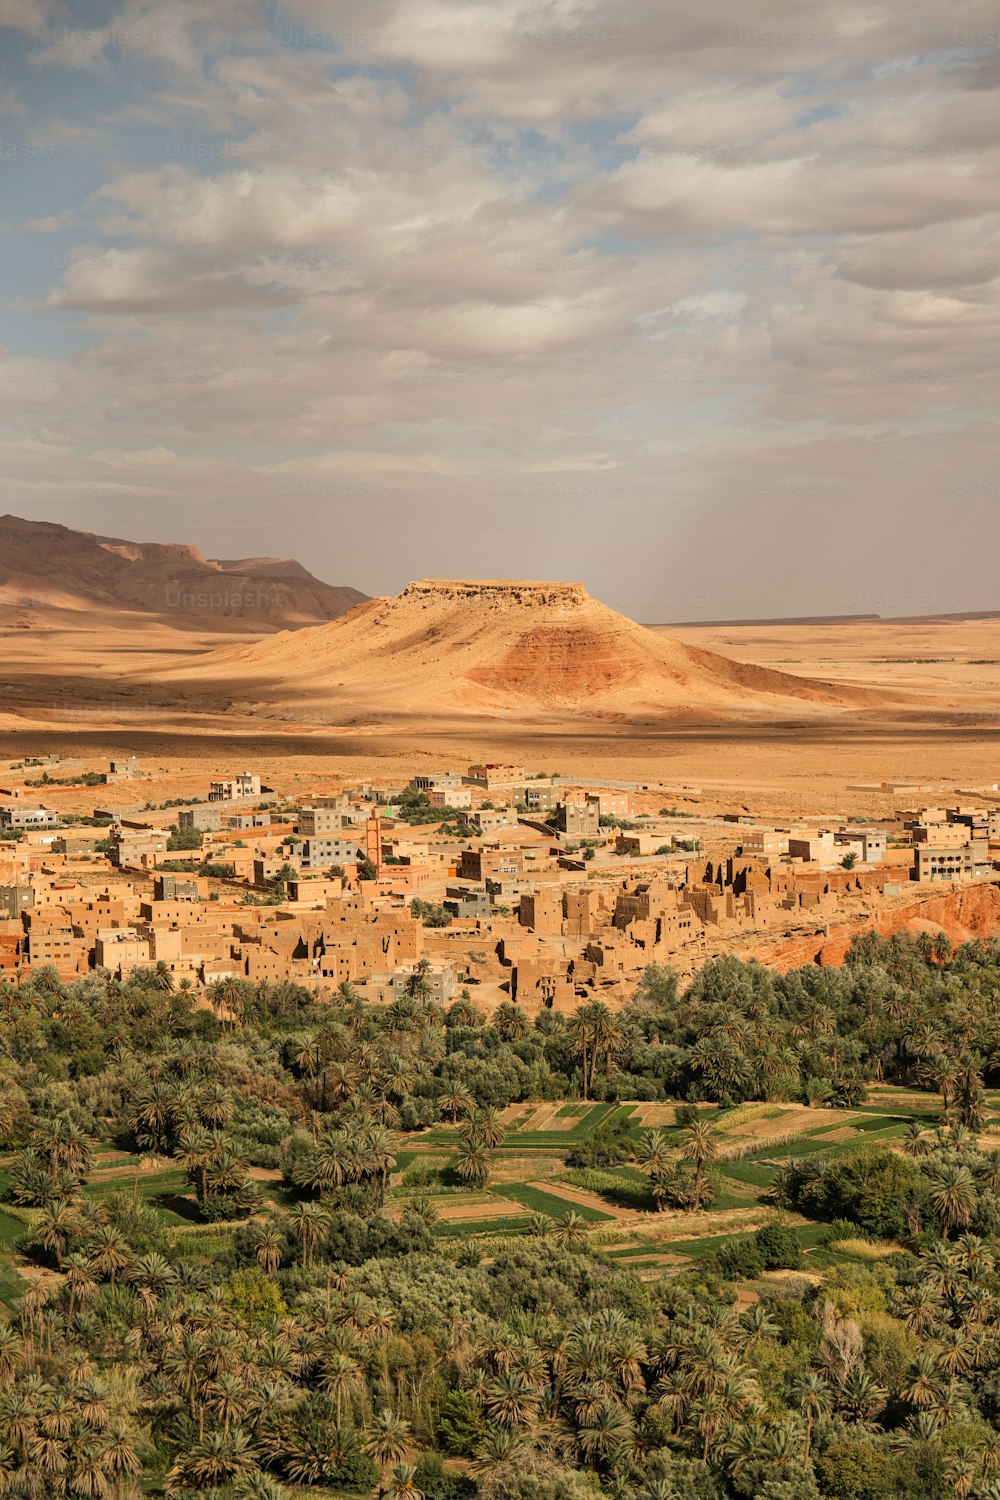 Un petit village au milieu d’un désert